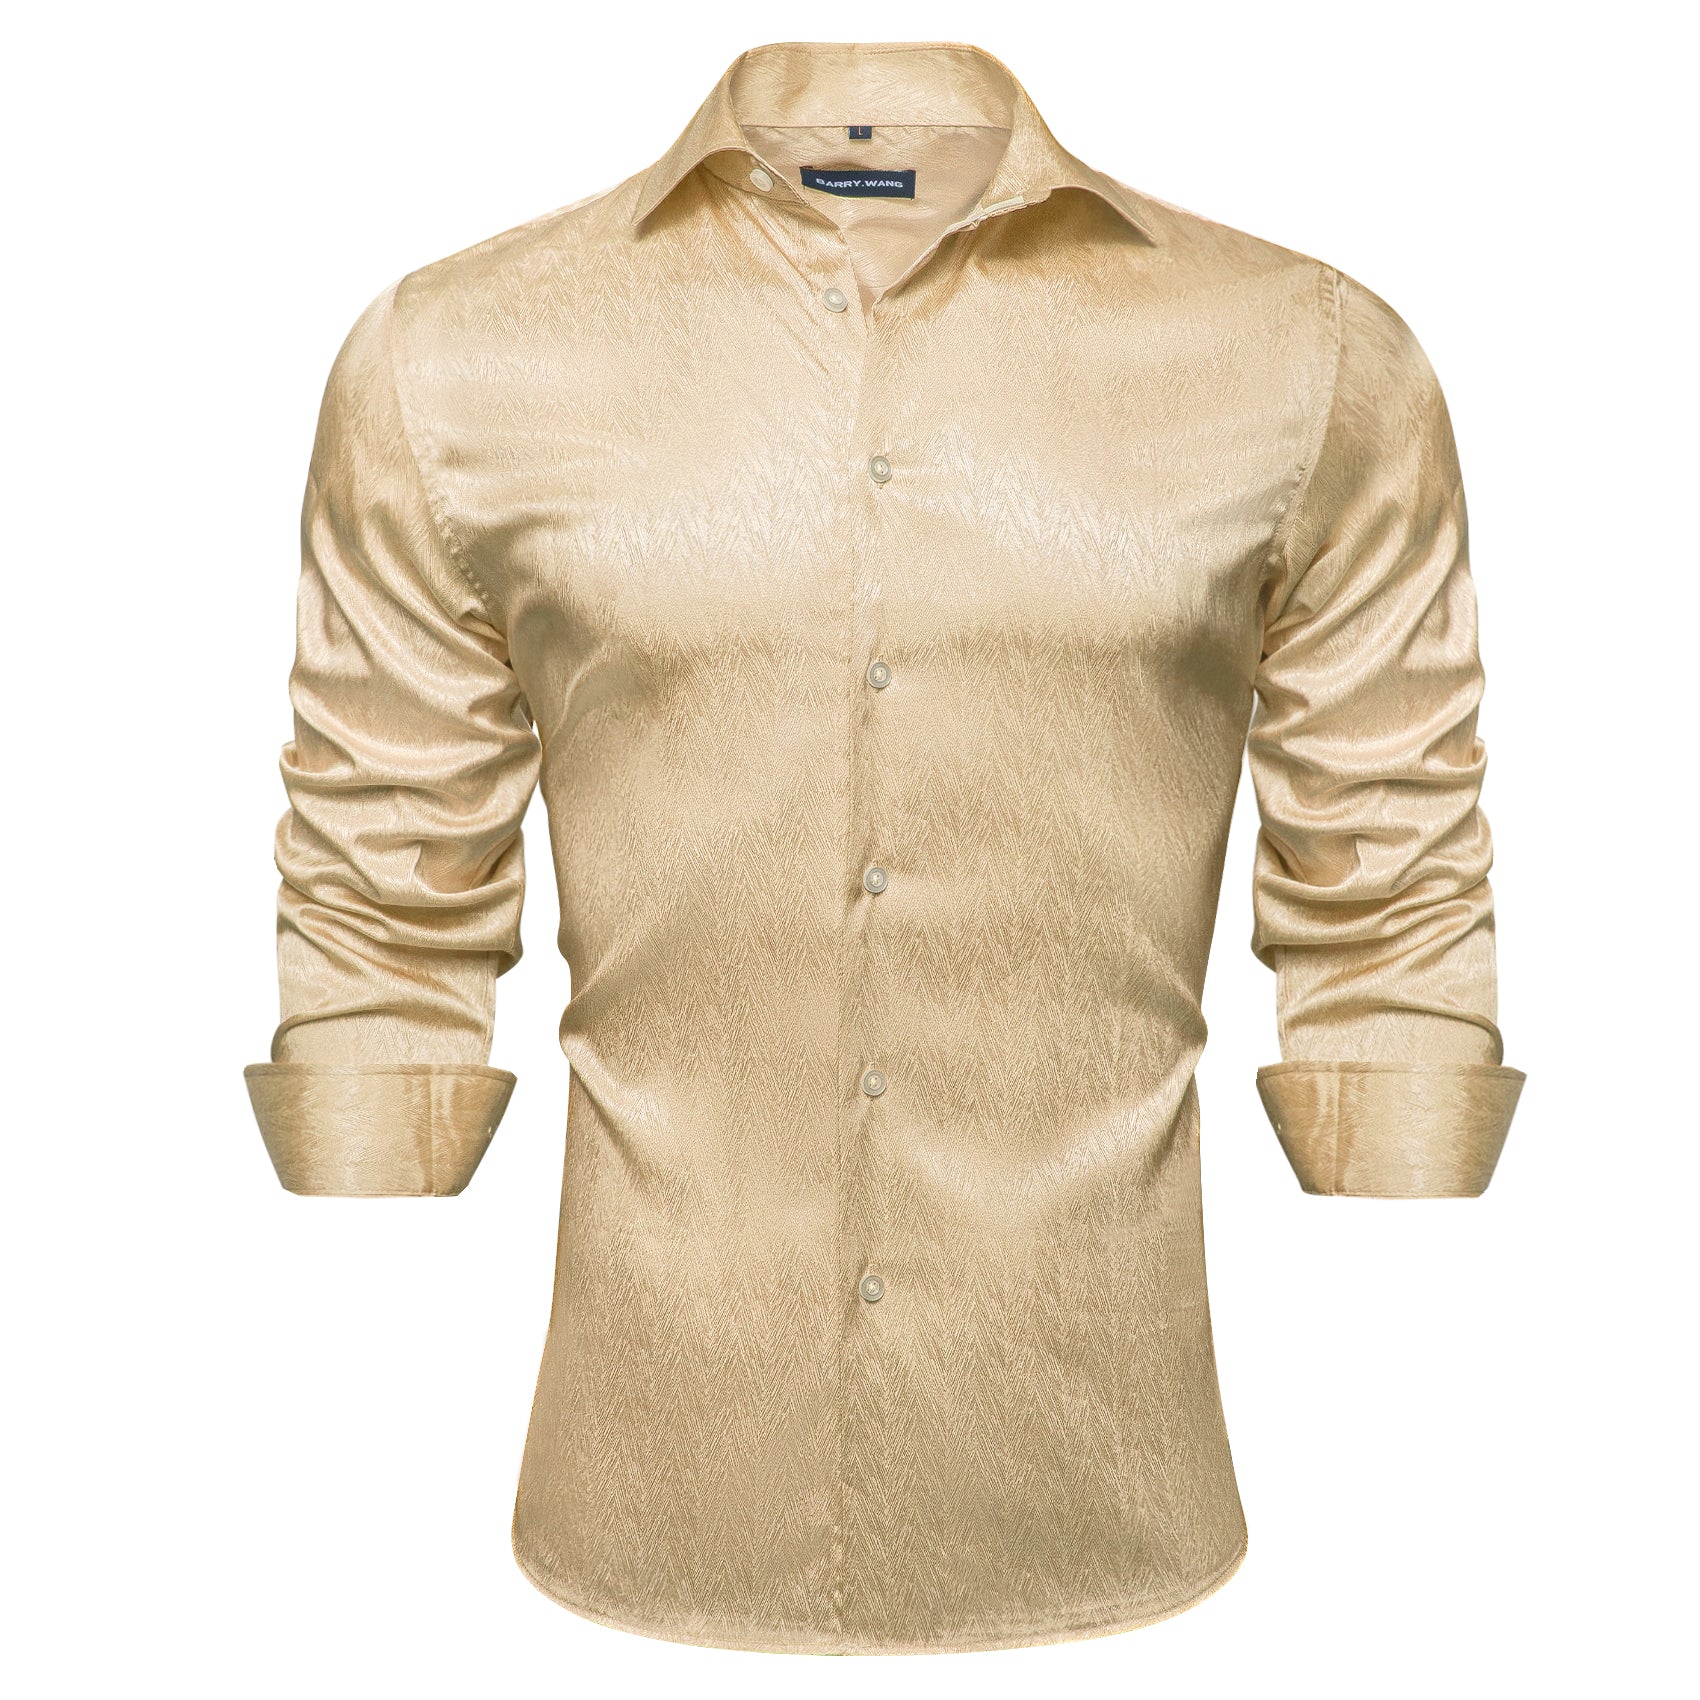 Barry.wang Button Down Shirt Fashion Champagne Solid Silk Men's Shirt